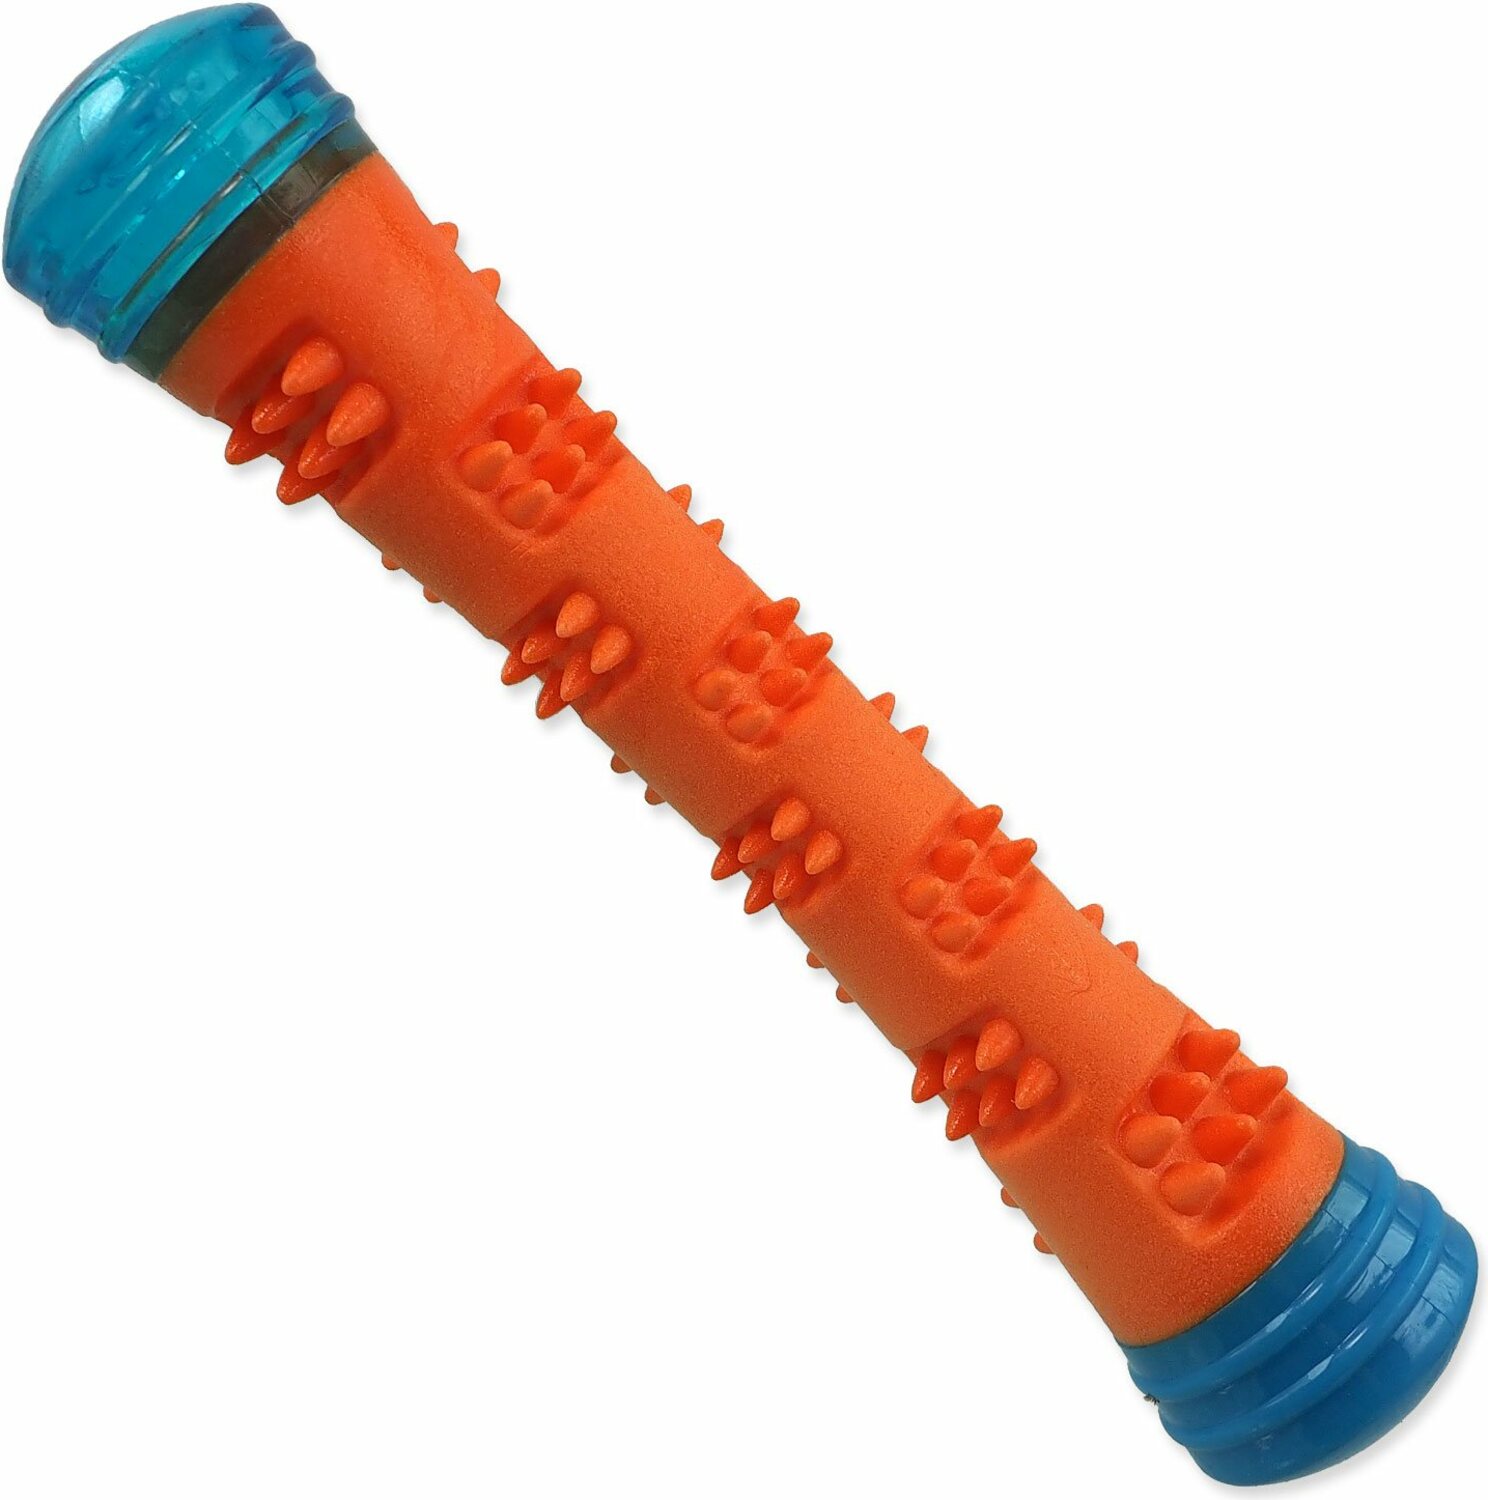 Hračka Dog Fantasy palička kouzelná svítící, pískací oranžovo-modrá 4,6x4,6x23cm